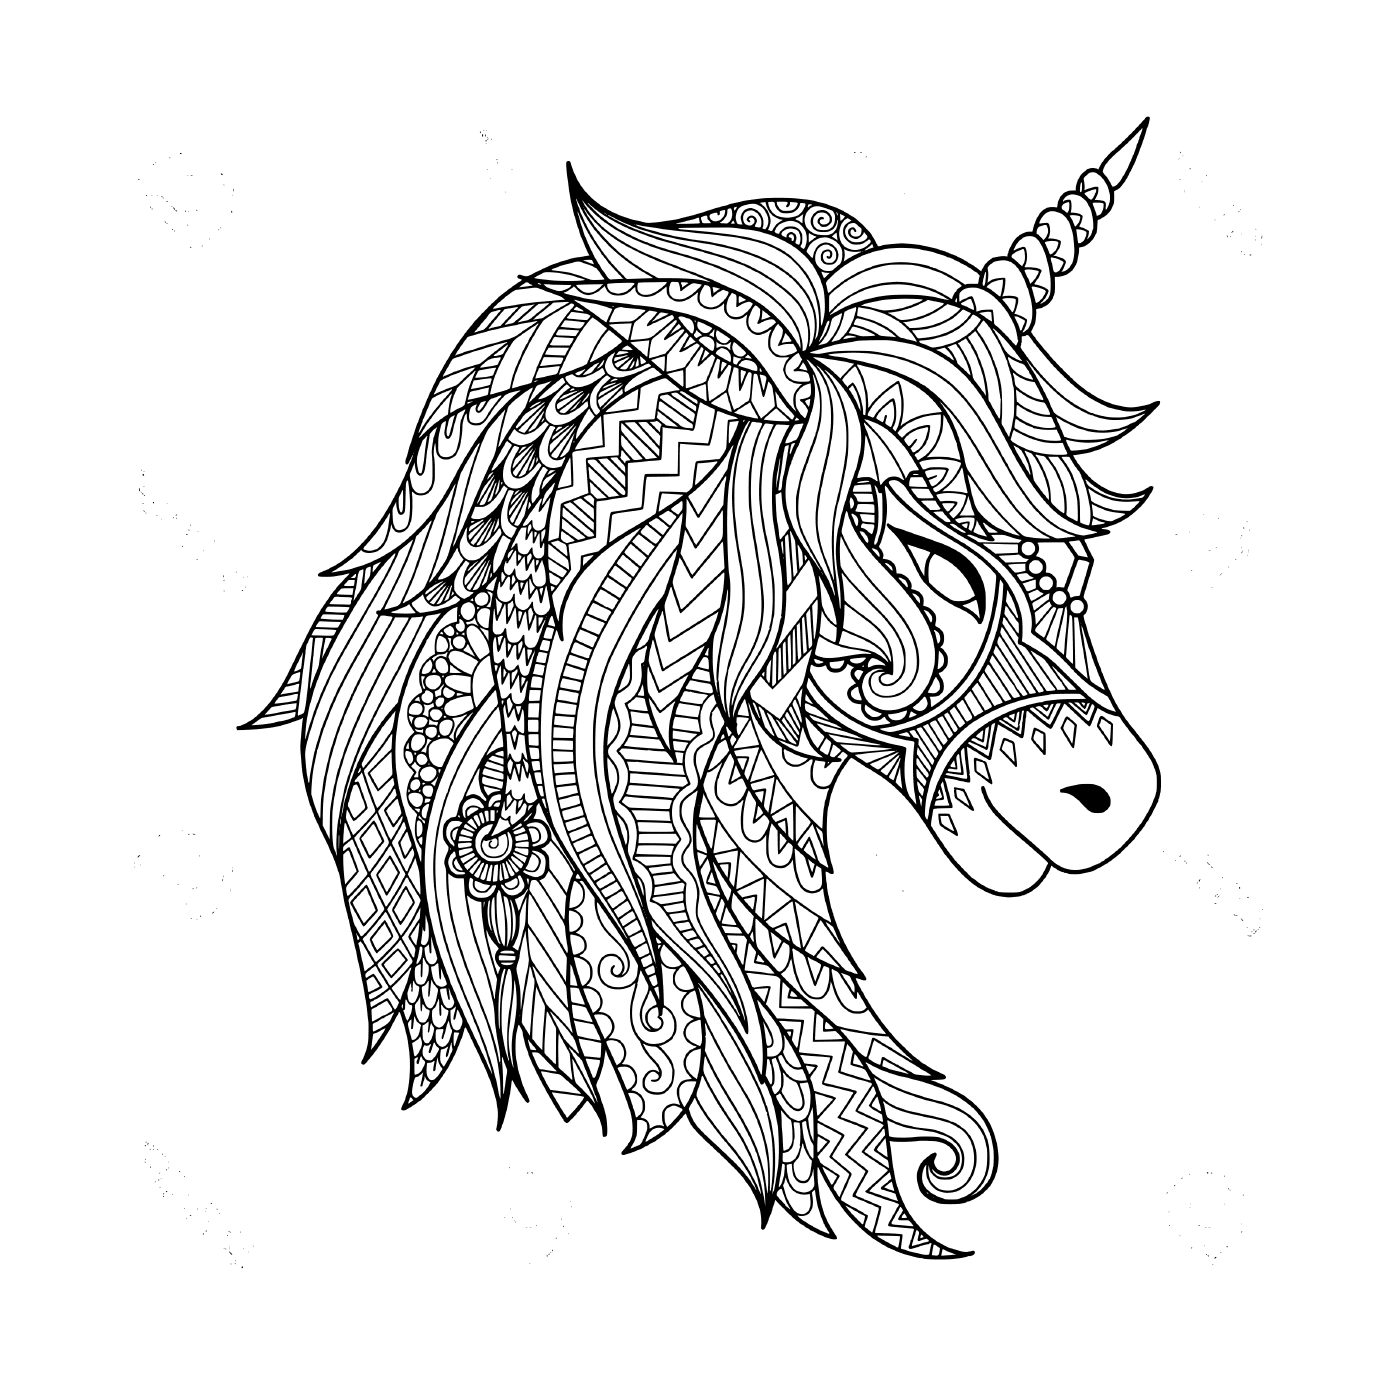  tatuaggio per adulti che rappresenta un unicorno 